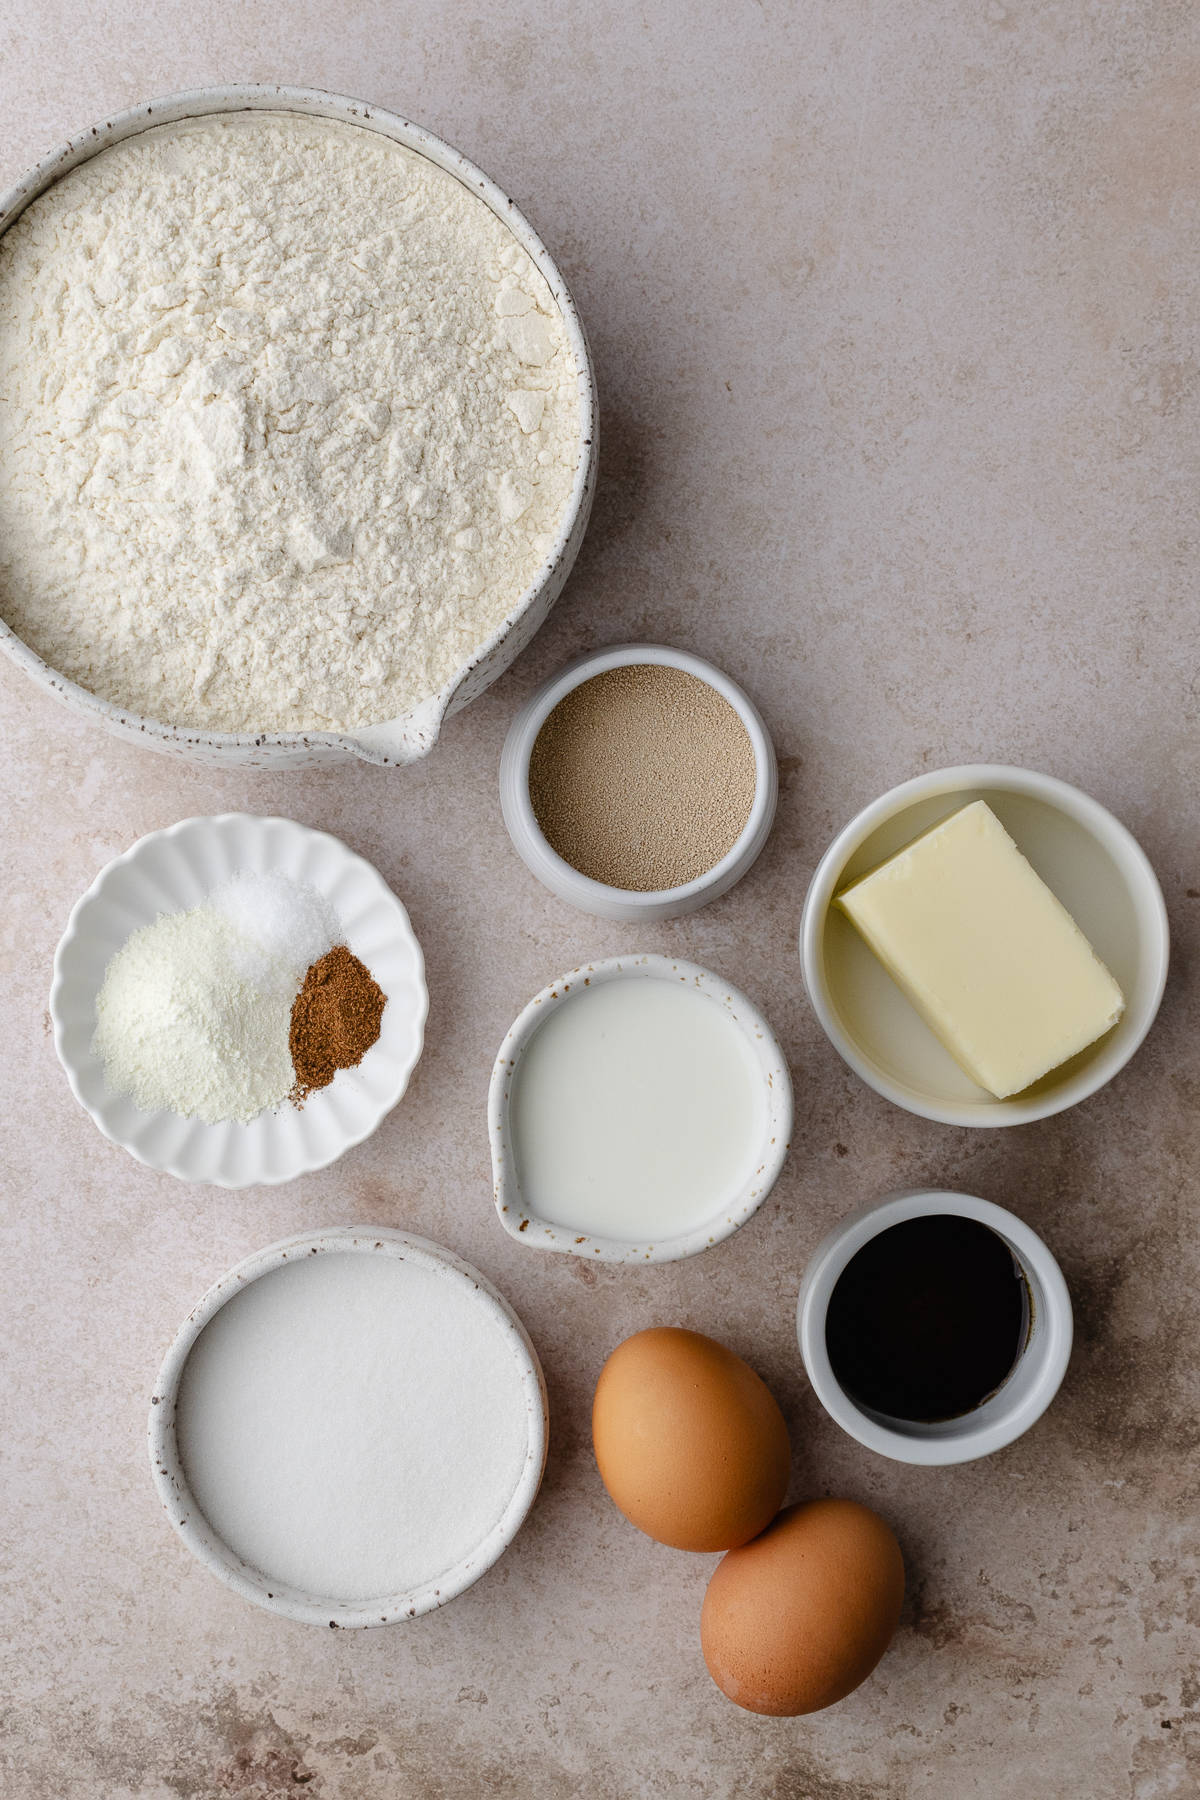 Brioche dough ingredients